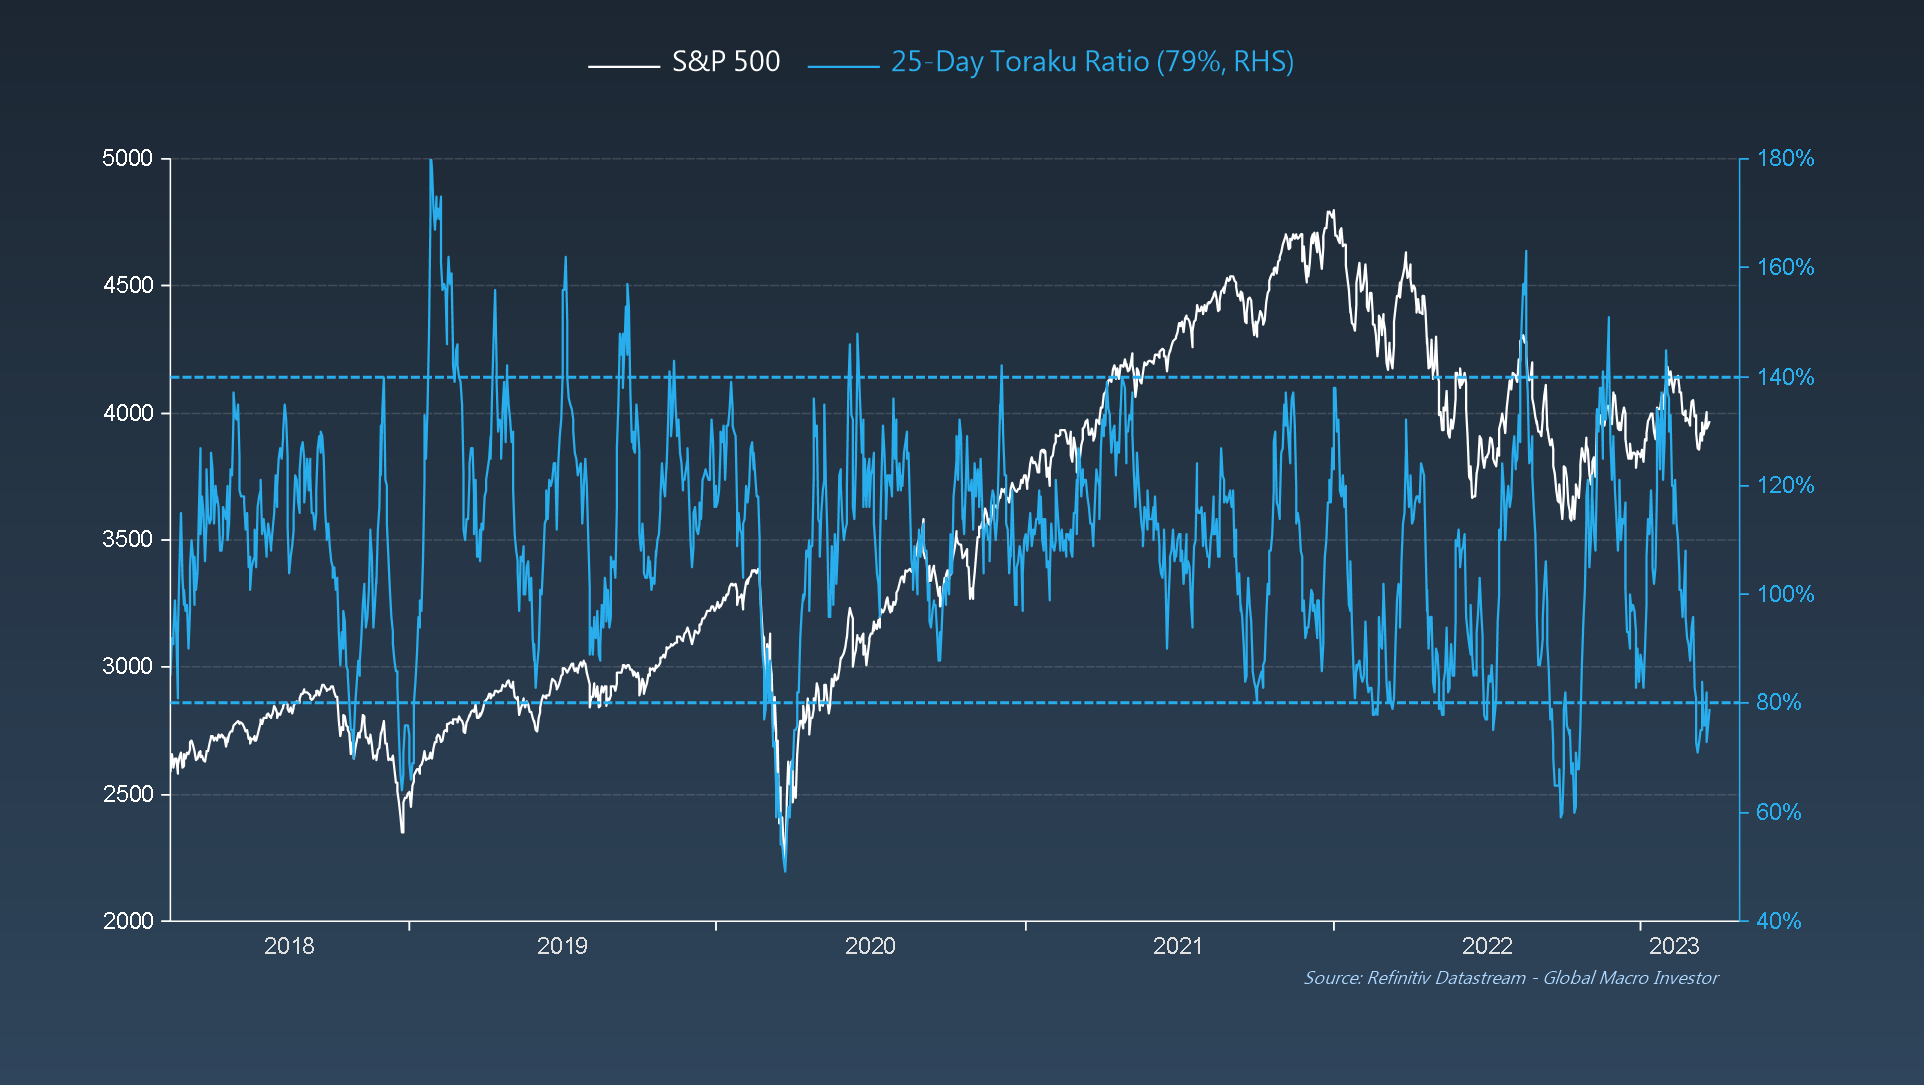 S&P 500 vs. 25-Day Toraku Ratio